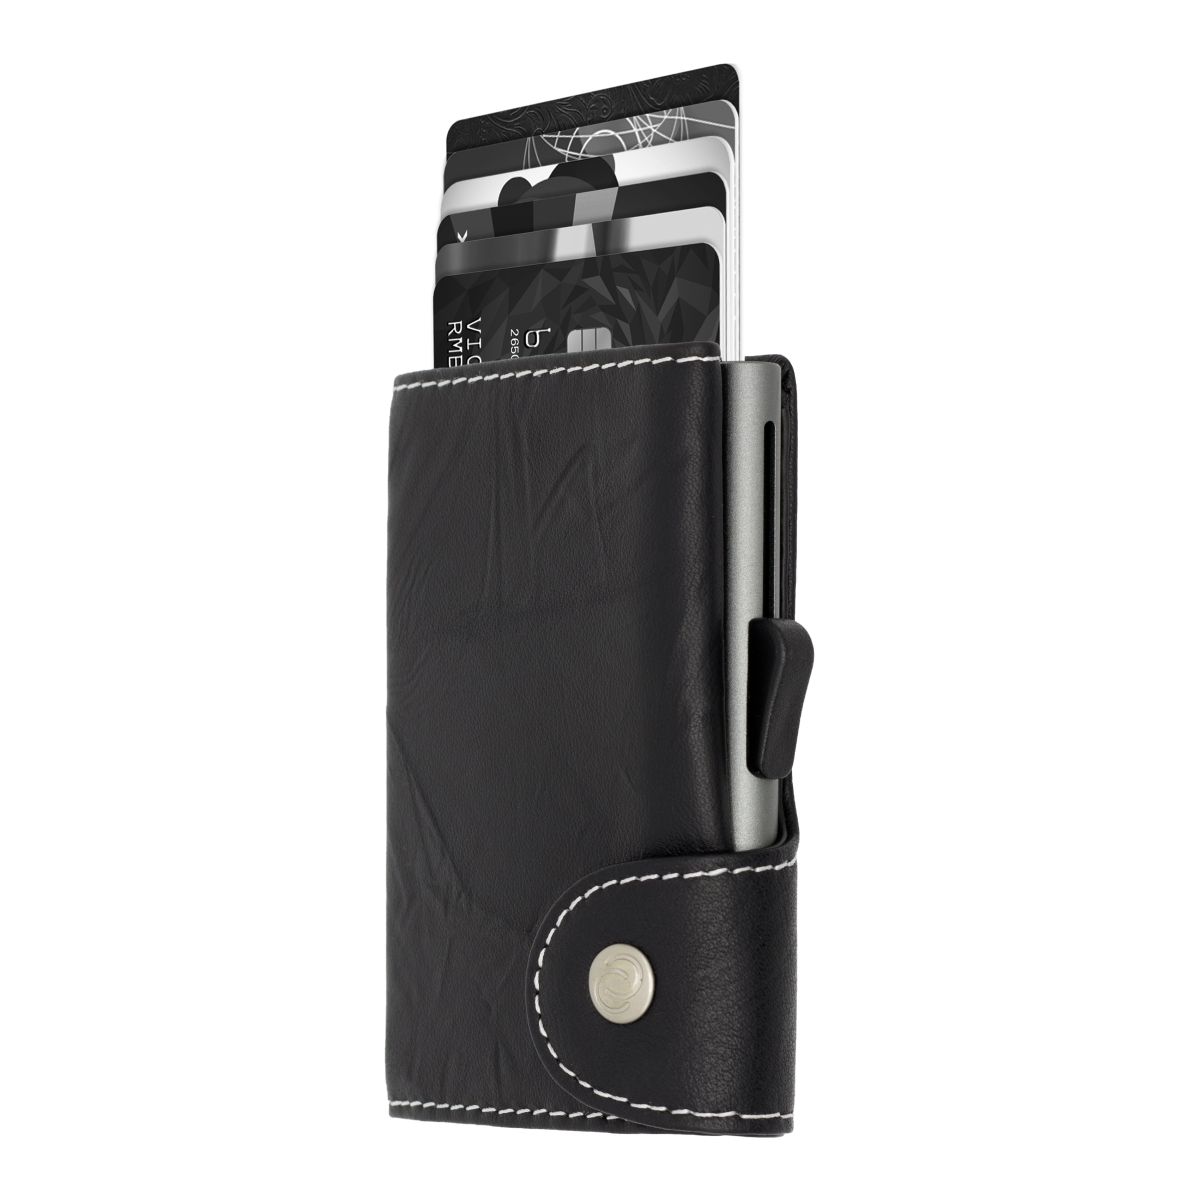 C-Secure Aluminum Card Holder with Genuine Leather - Black / Titanium